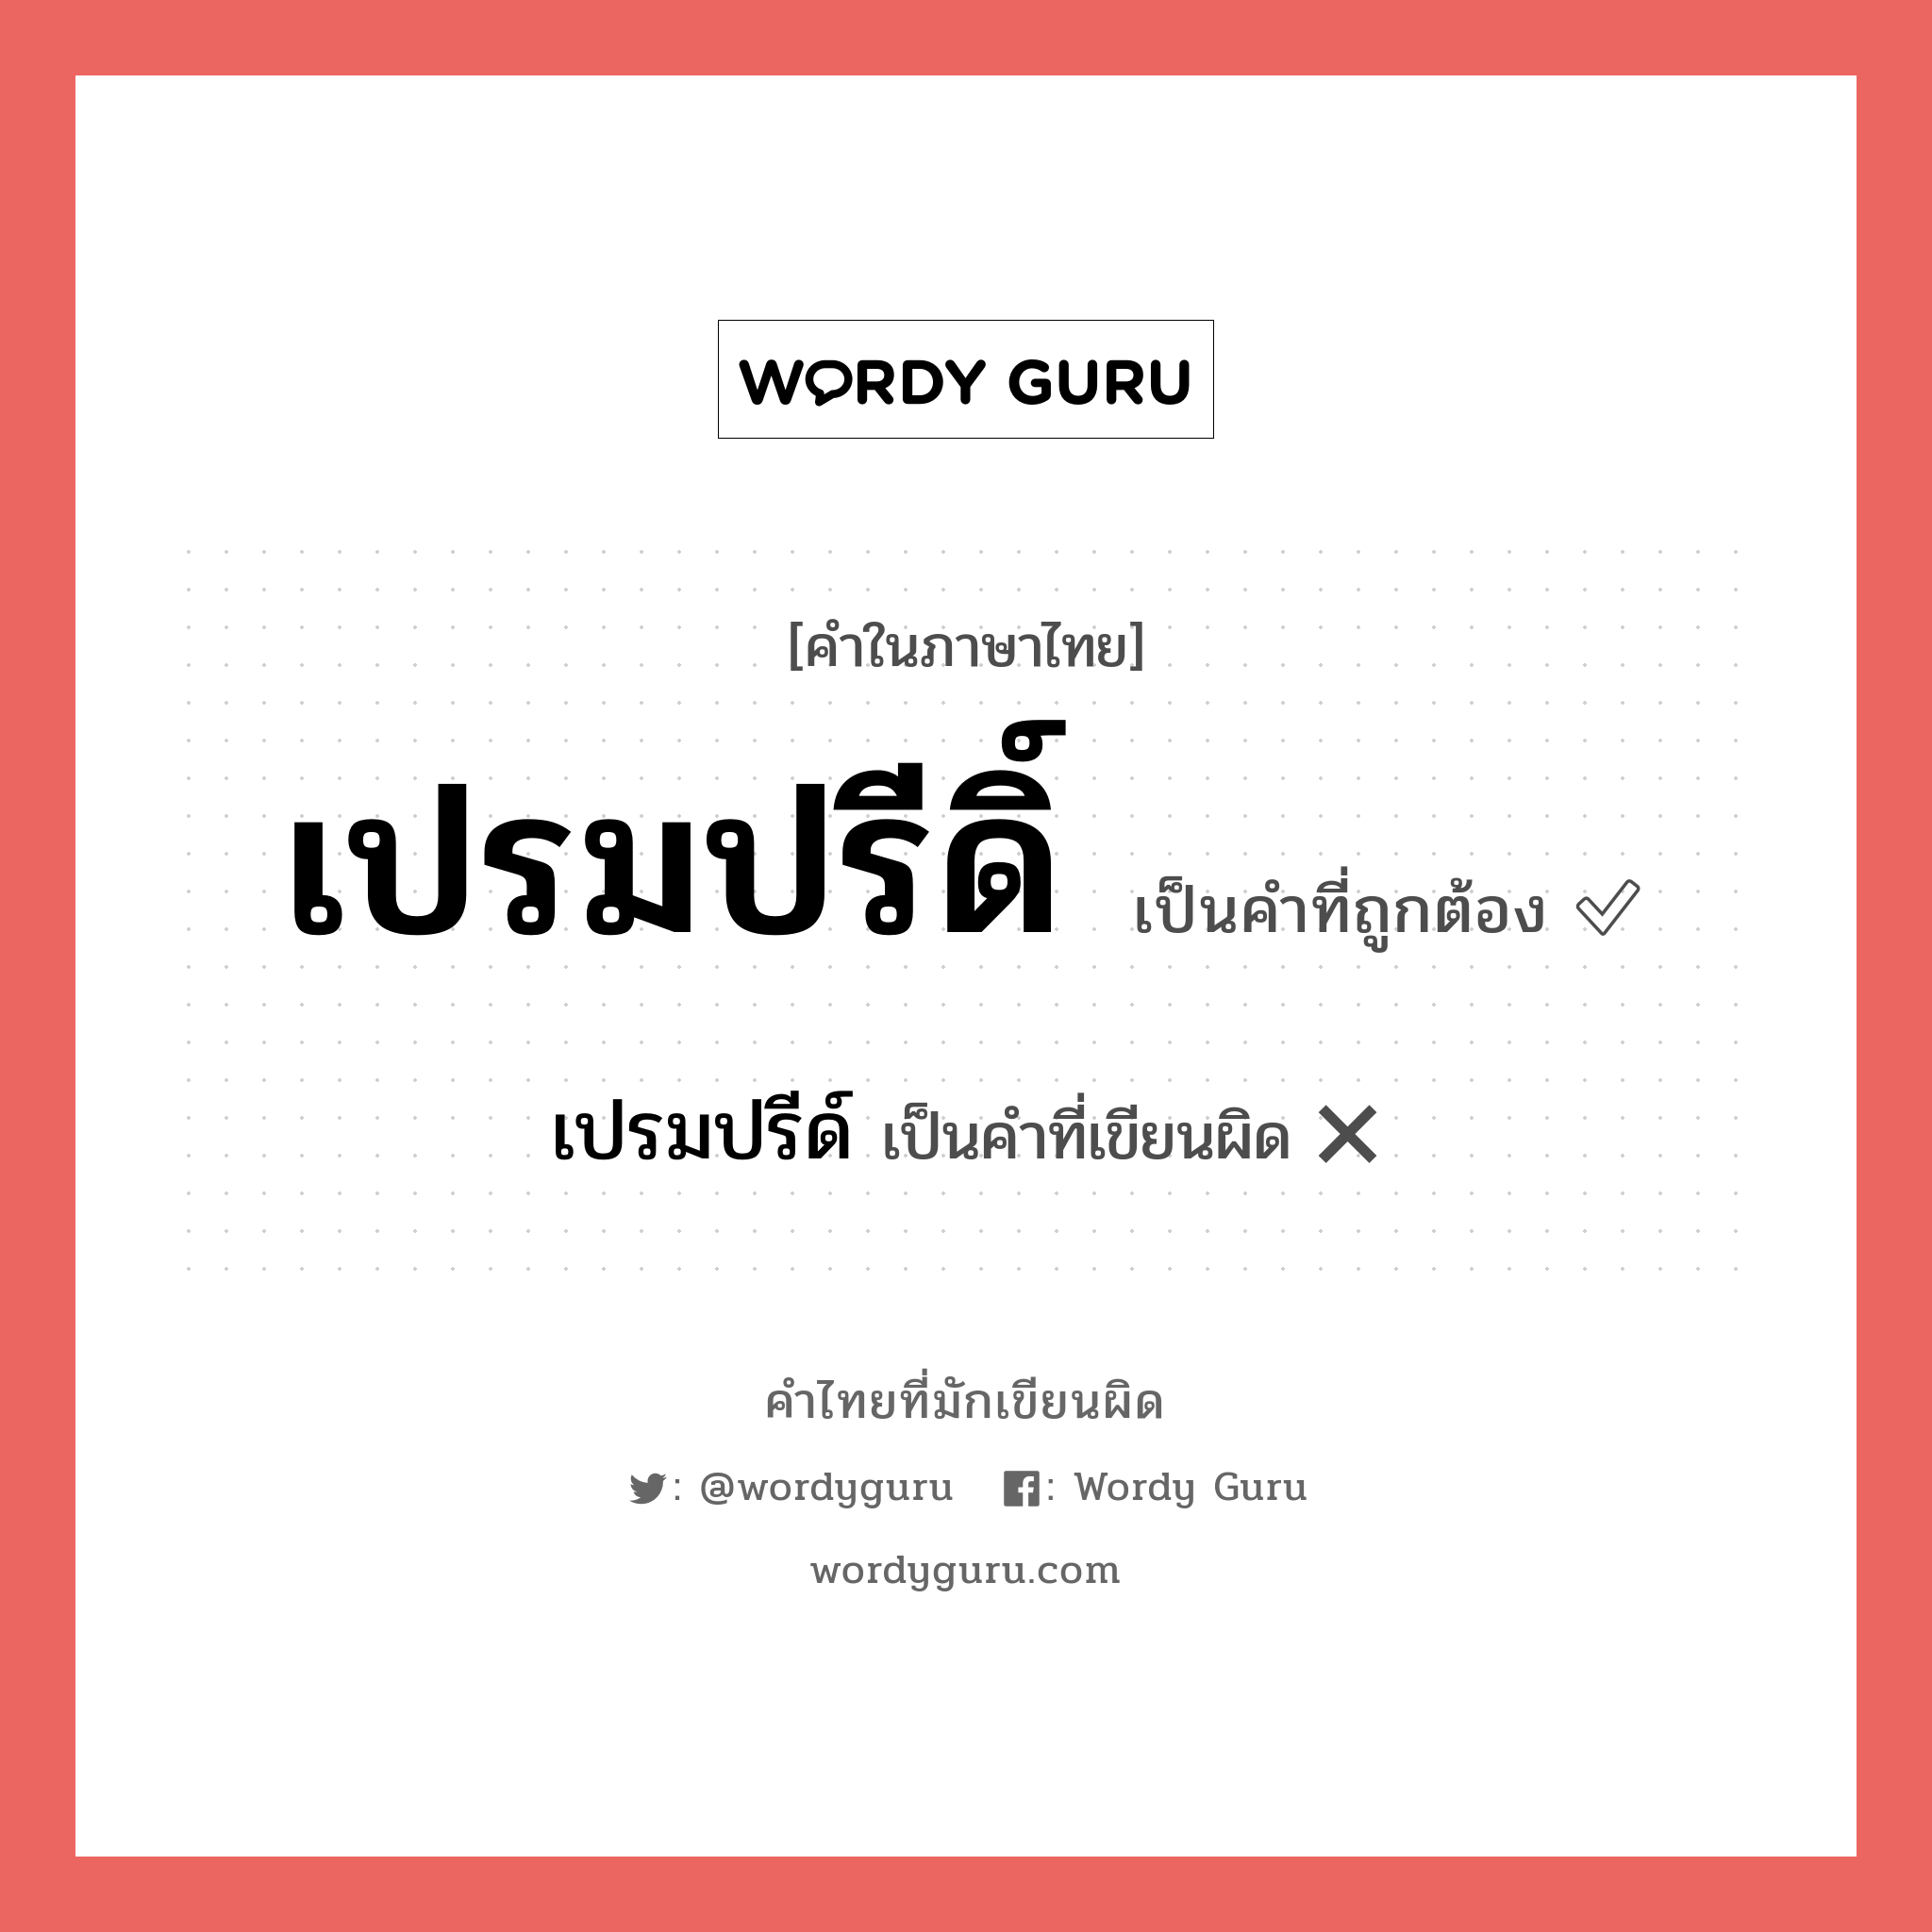 เปรมปรีดิ์ หรือ เปรมปรี คำไหนเขียนถูก?, คำในภาษาไทยที่มักเขียนผิด เปรมปรีดิ์ คำที่ผิด ❌ เปรมปรีด์